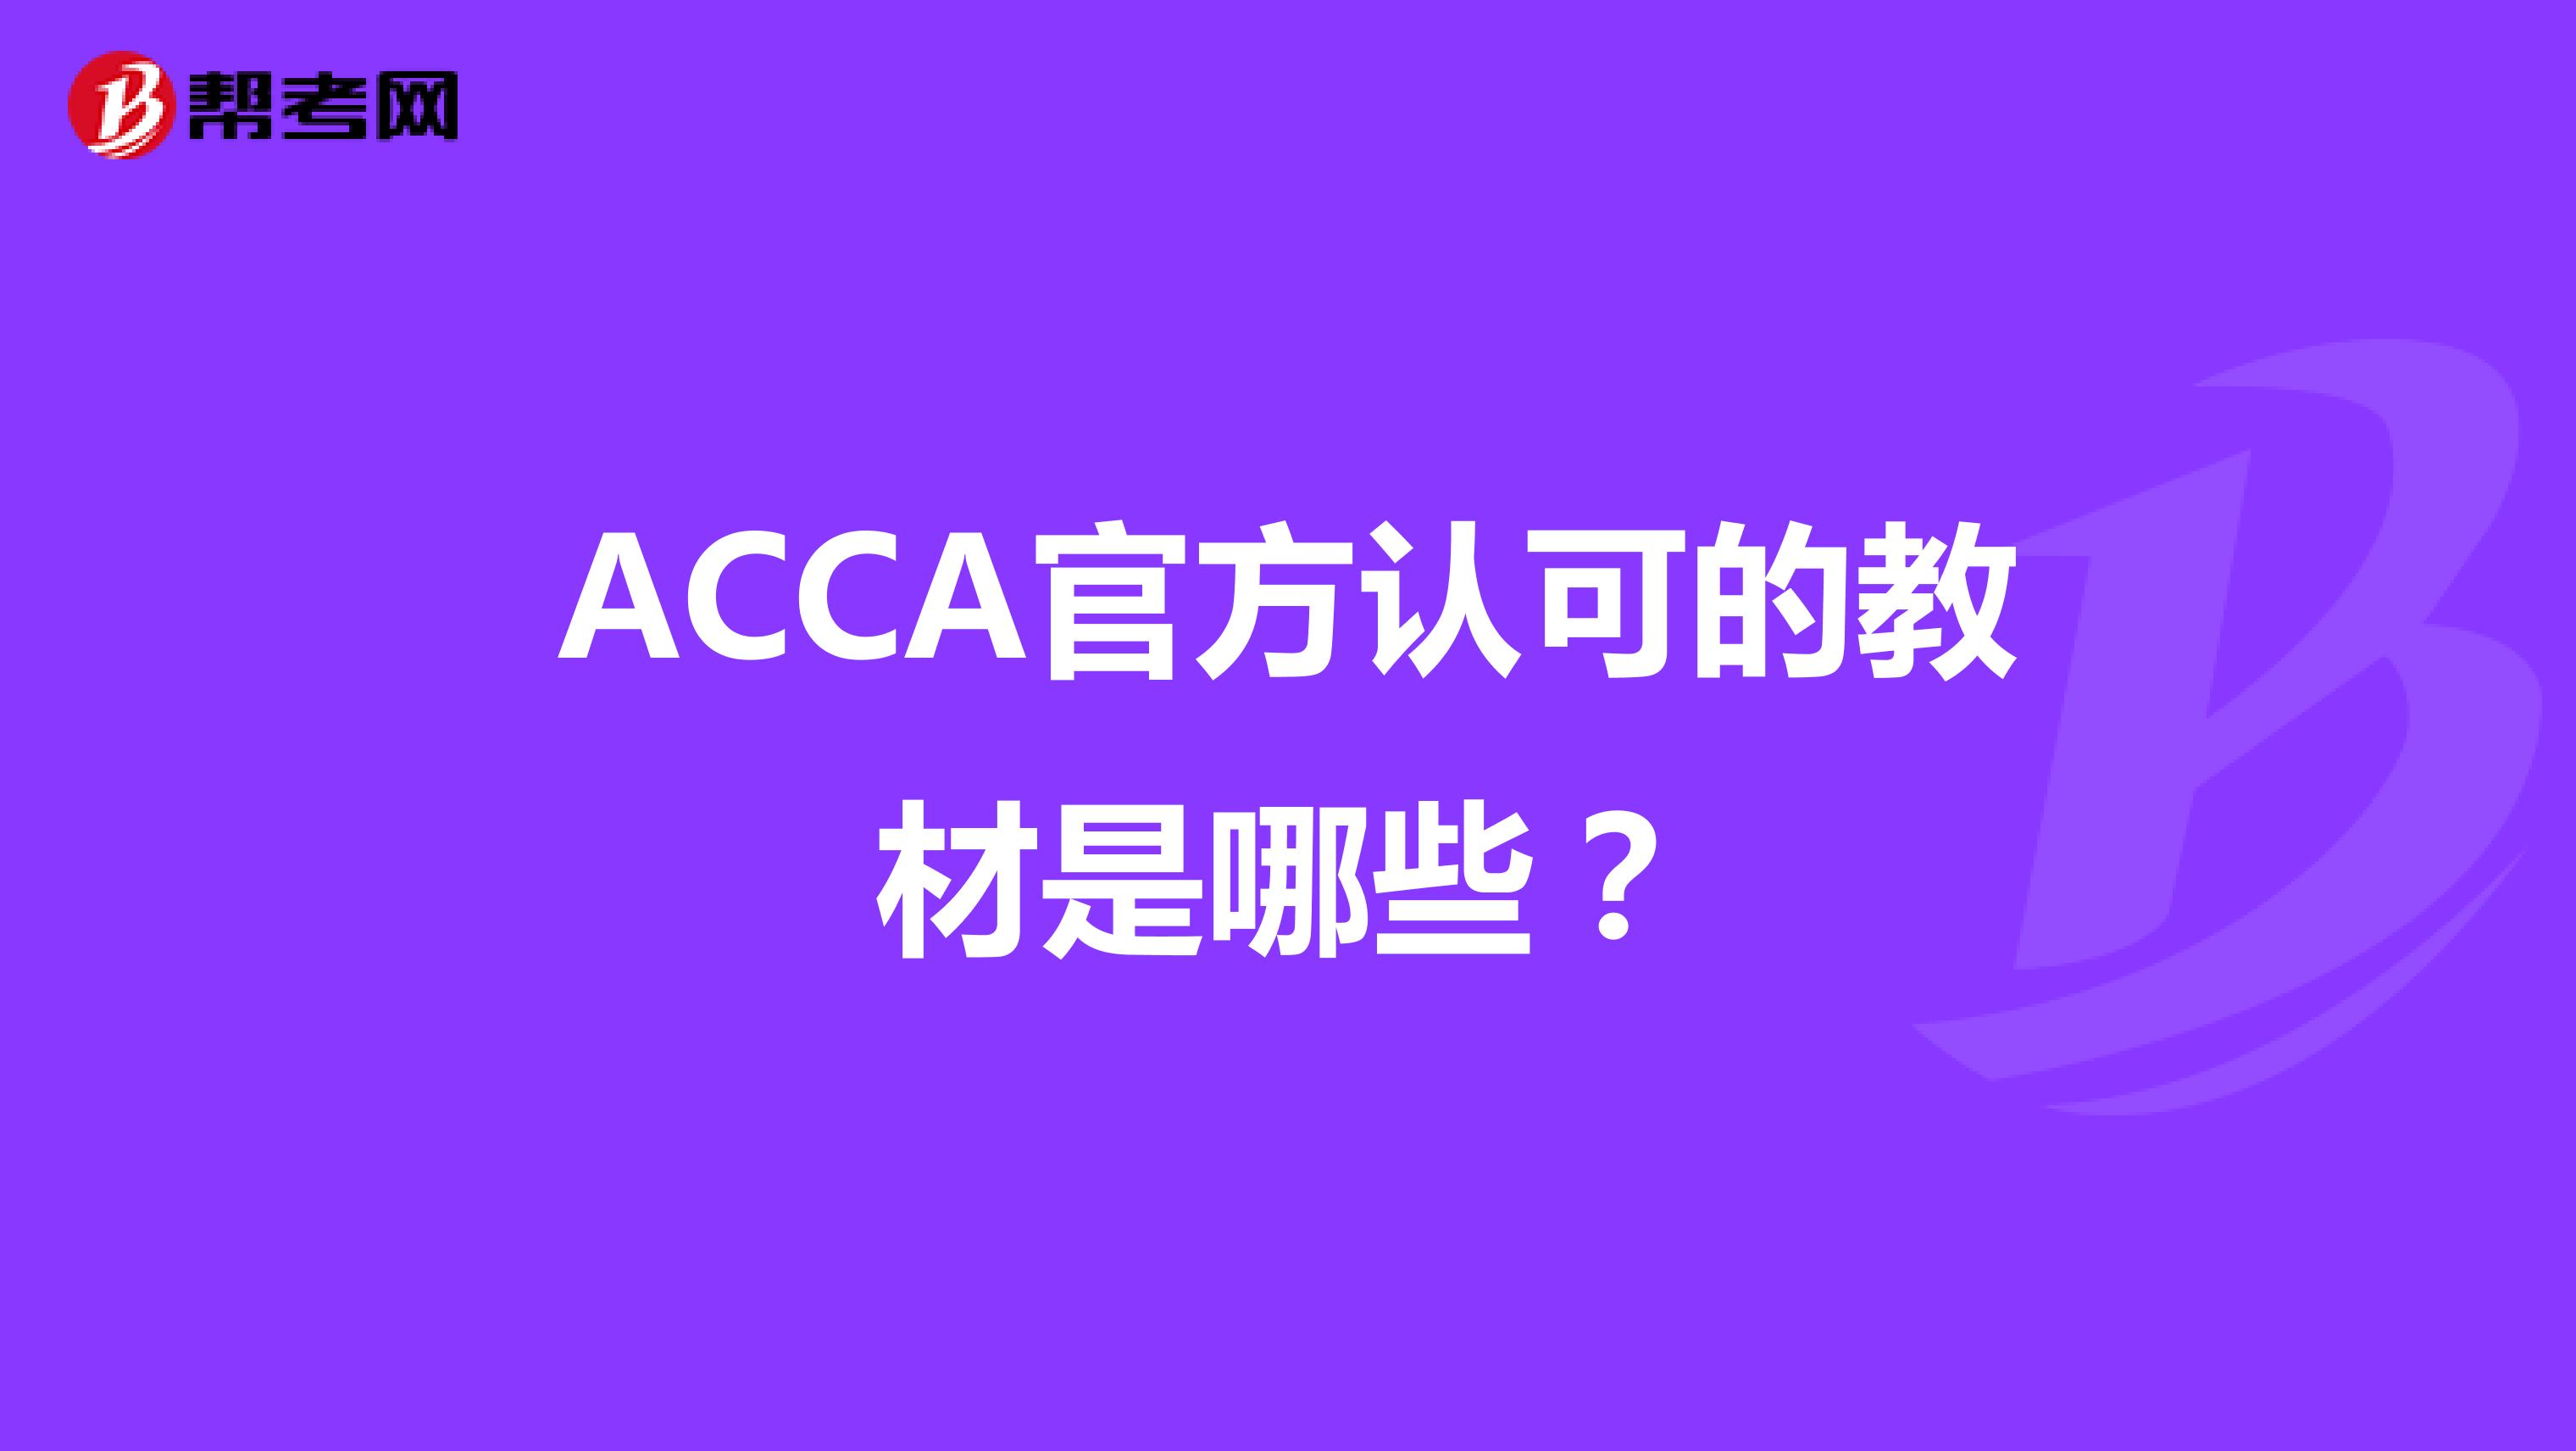 ACCA官方认可的教材是哪些？